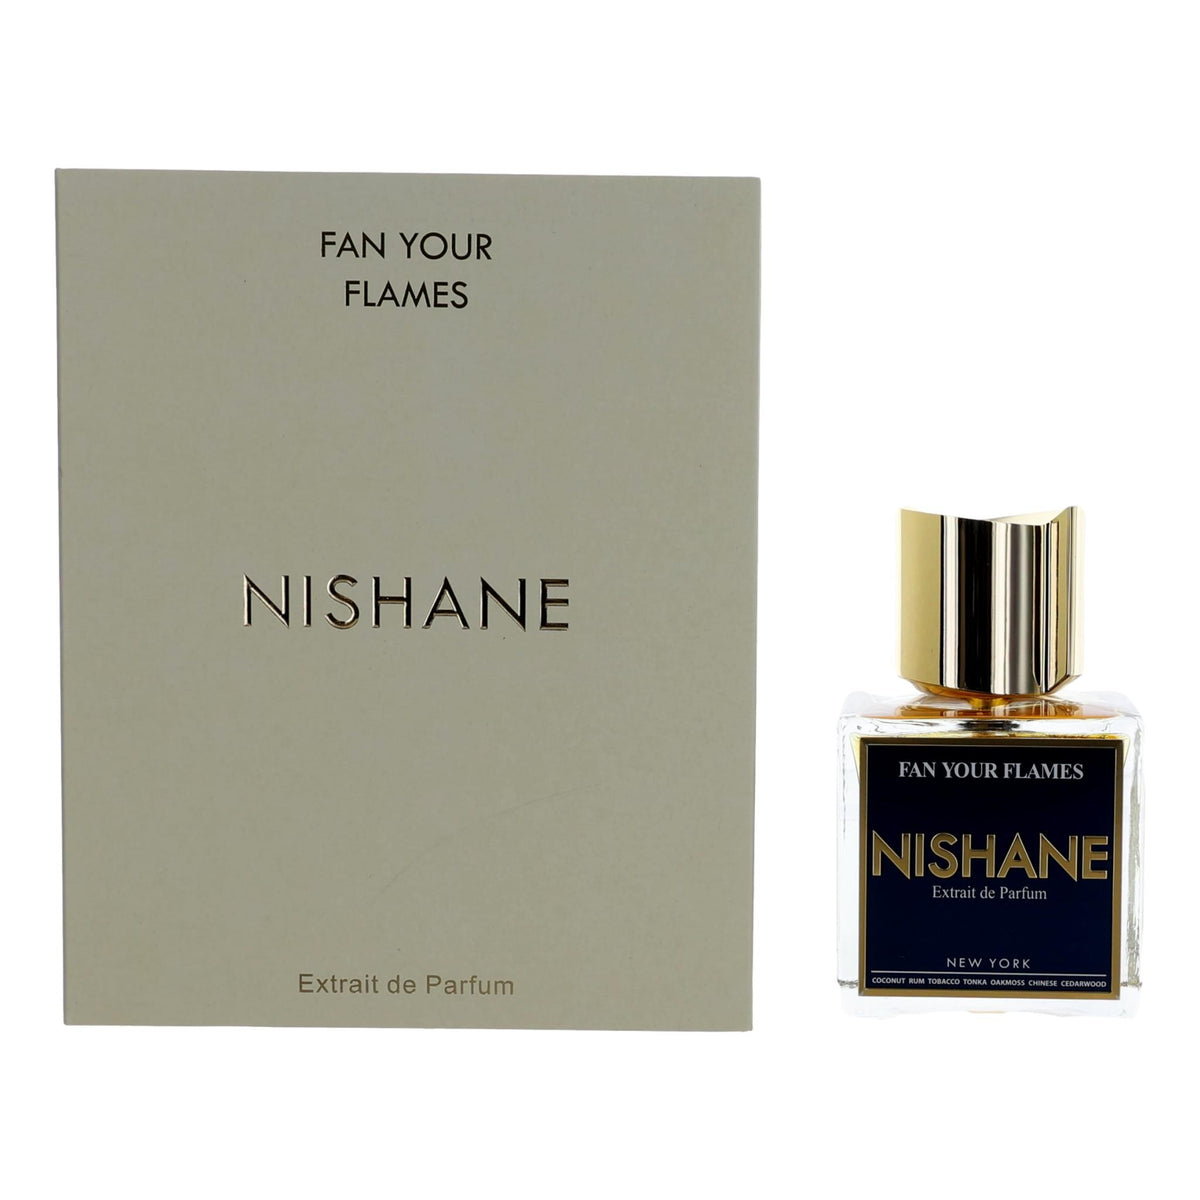 Nishane Fan Your Flames by Nishane, 3.4 oz Extrait de Parfum Spray for Women